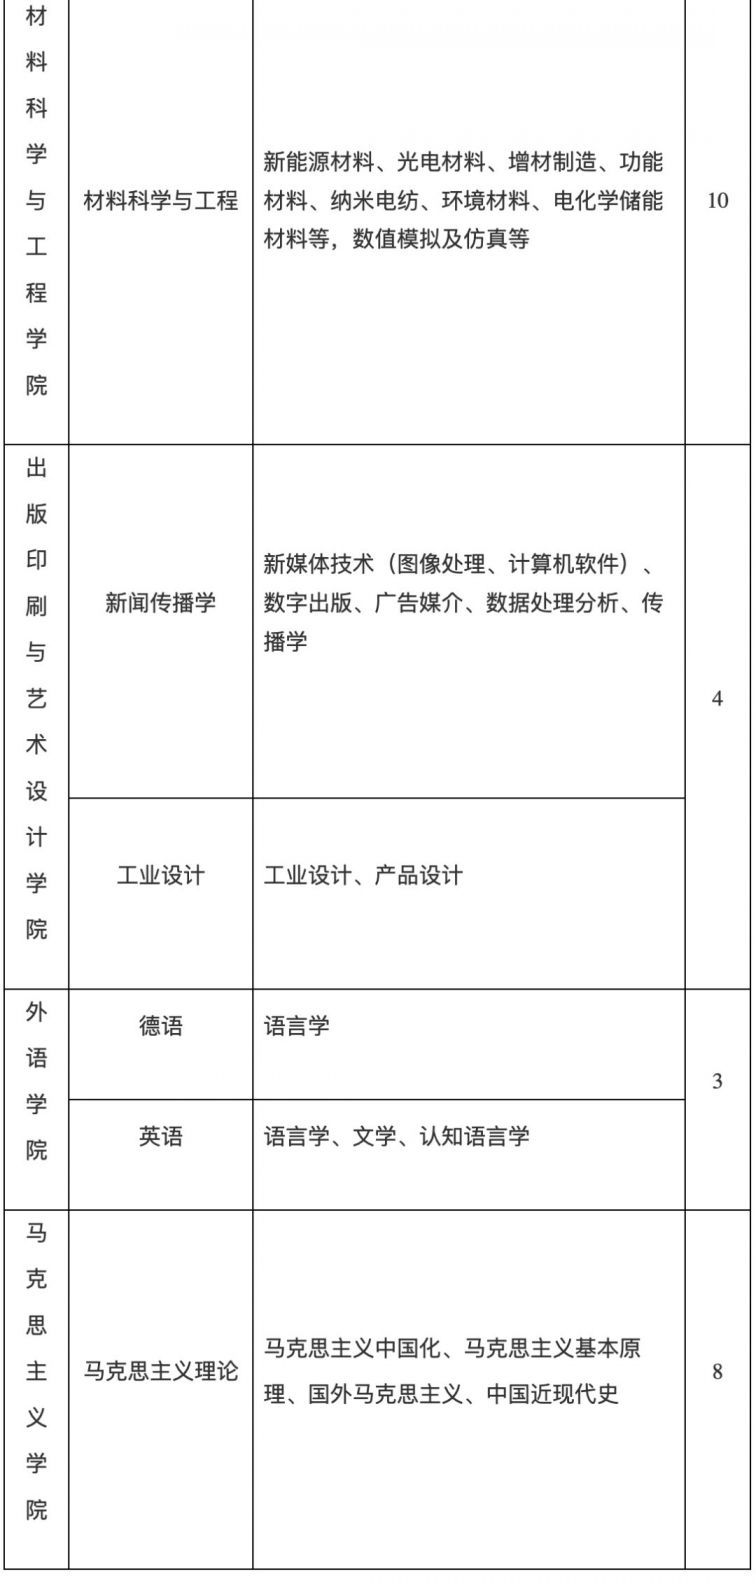 上海理工大学招138名专任教师 3月17日前报名